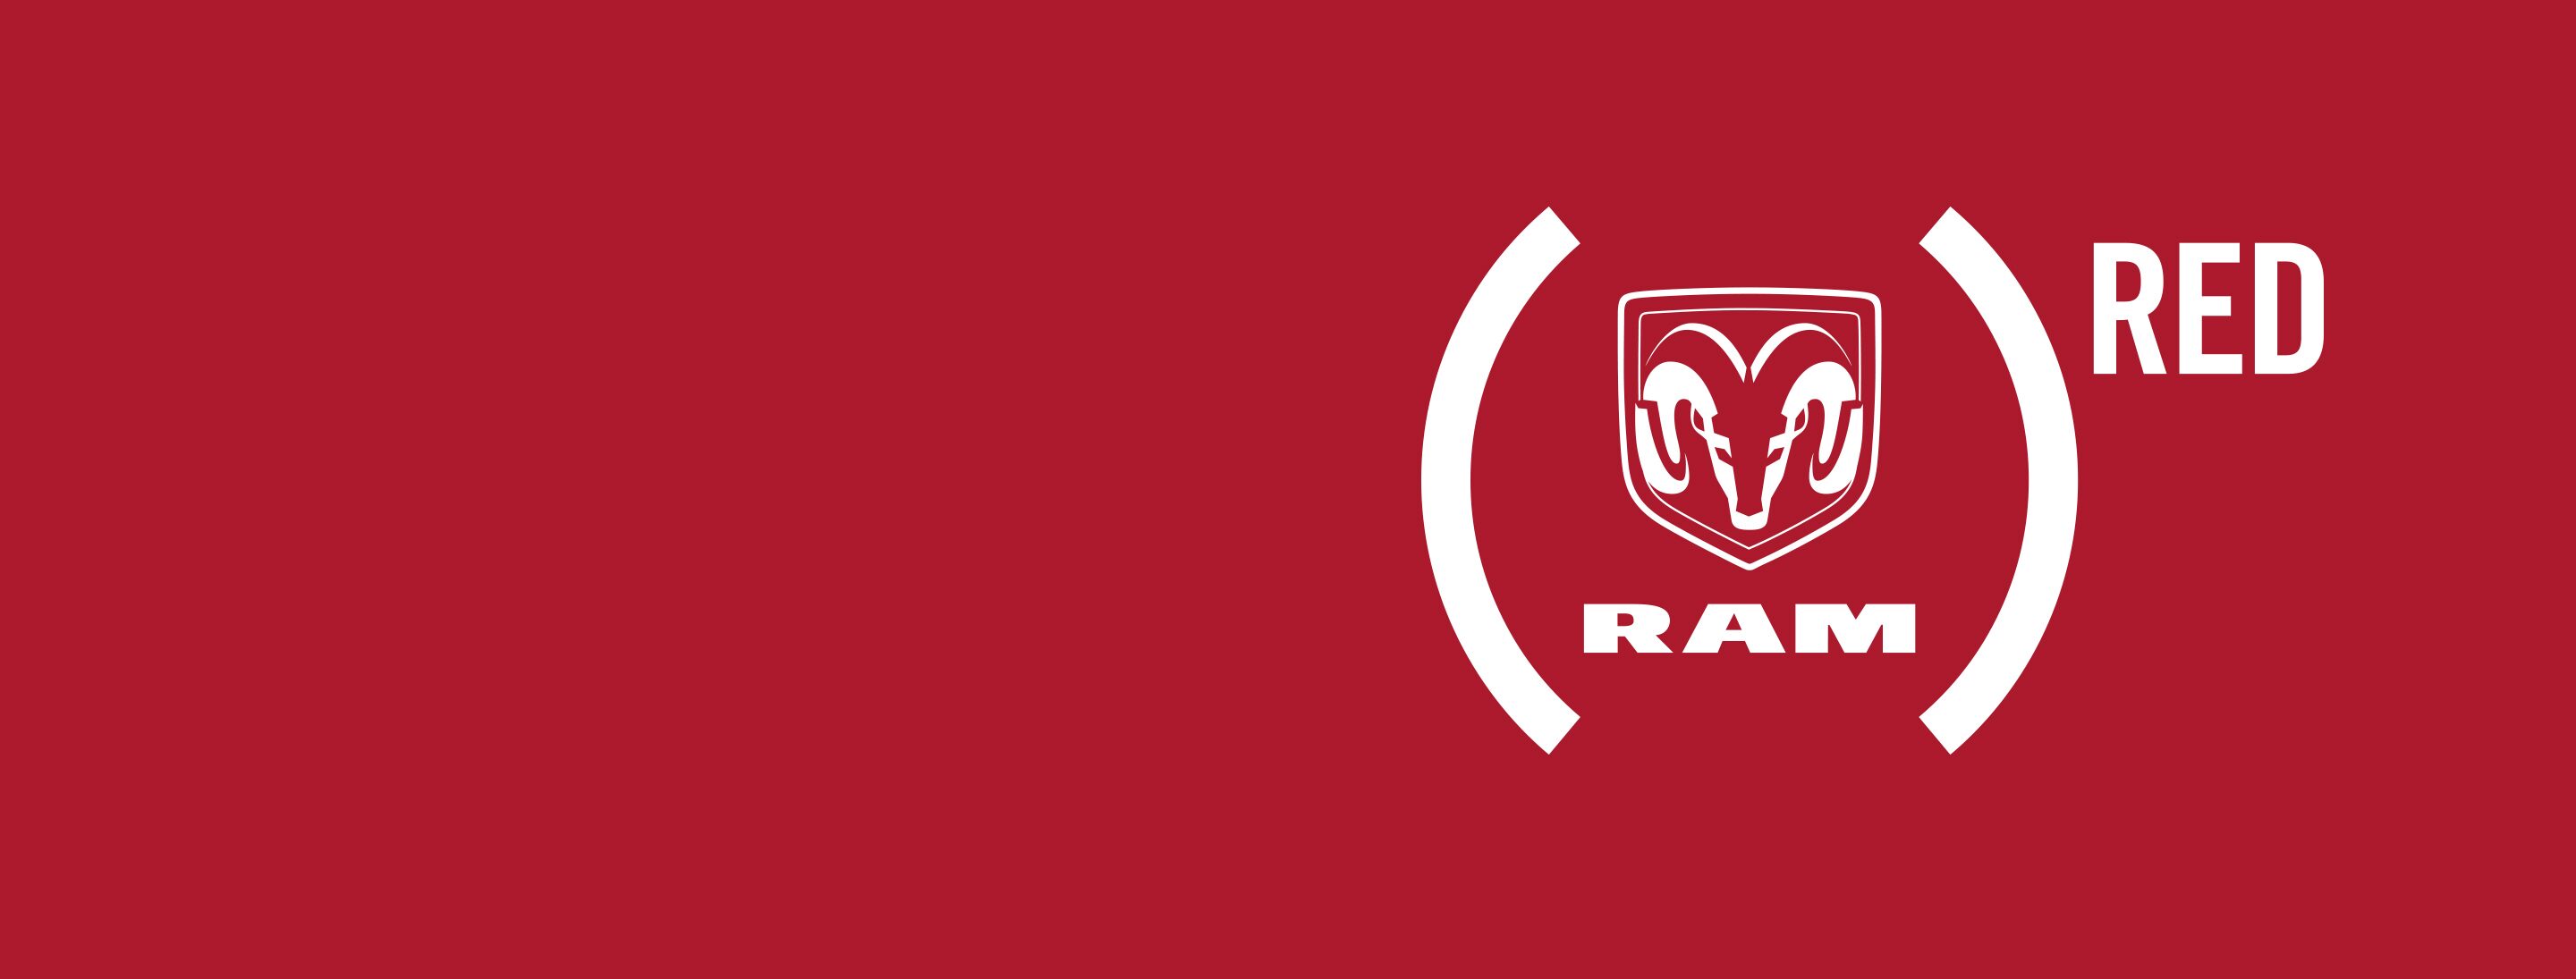 Logo de cabeza de carnero de Ram y marca Ram, rodeados por el logo de Product Red.